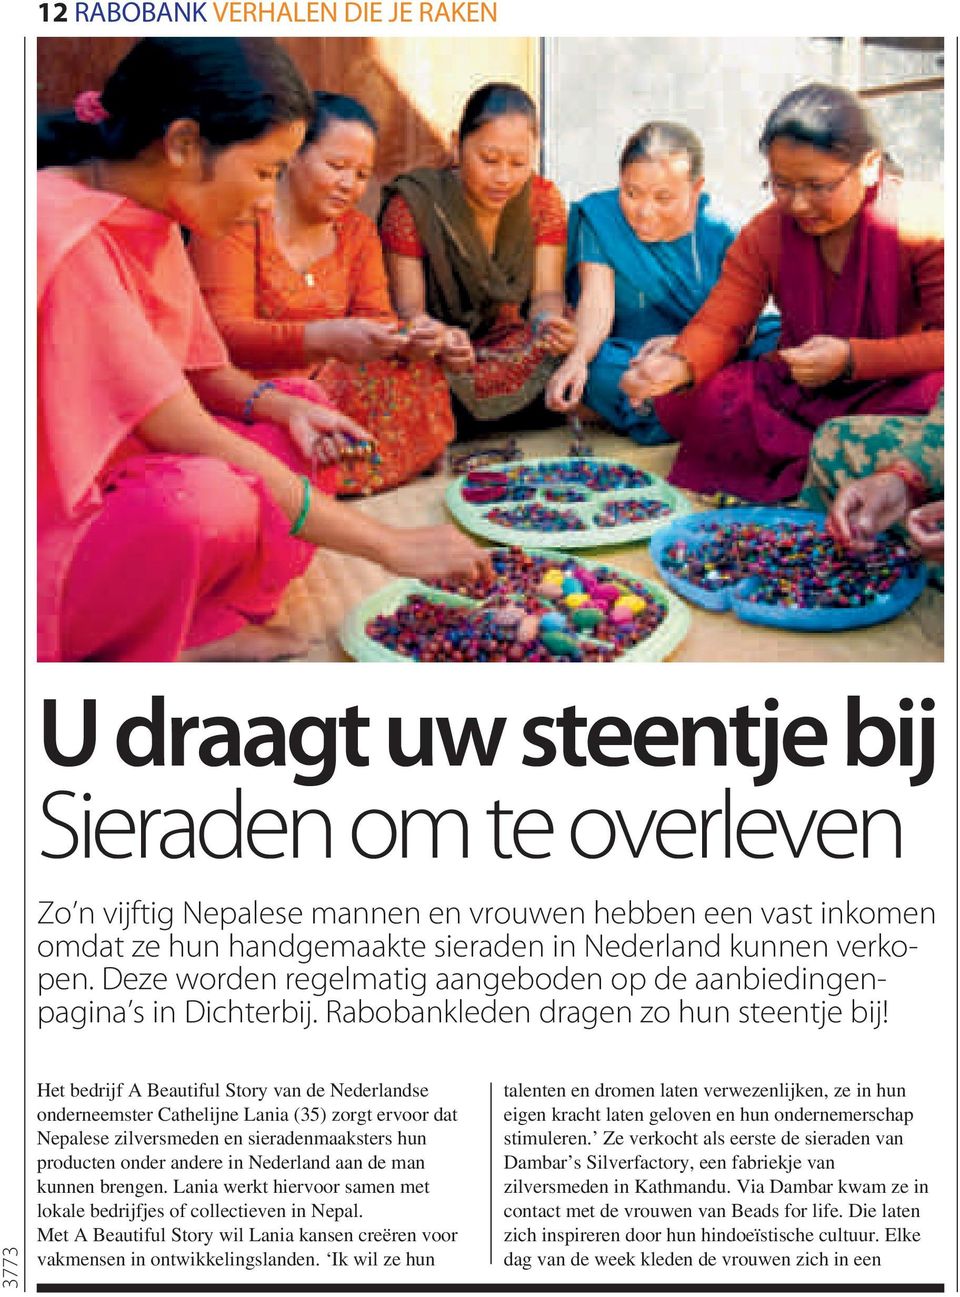 Het bedrijf A Beautiful Story van de Nederlandse onderneemster Cathelijne Lania (35) zorgt ervoor dat Nepalese zilversmeden en sieradenmaaksters hun producten onder andere in Nederland aan de man